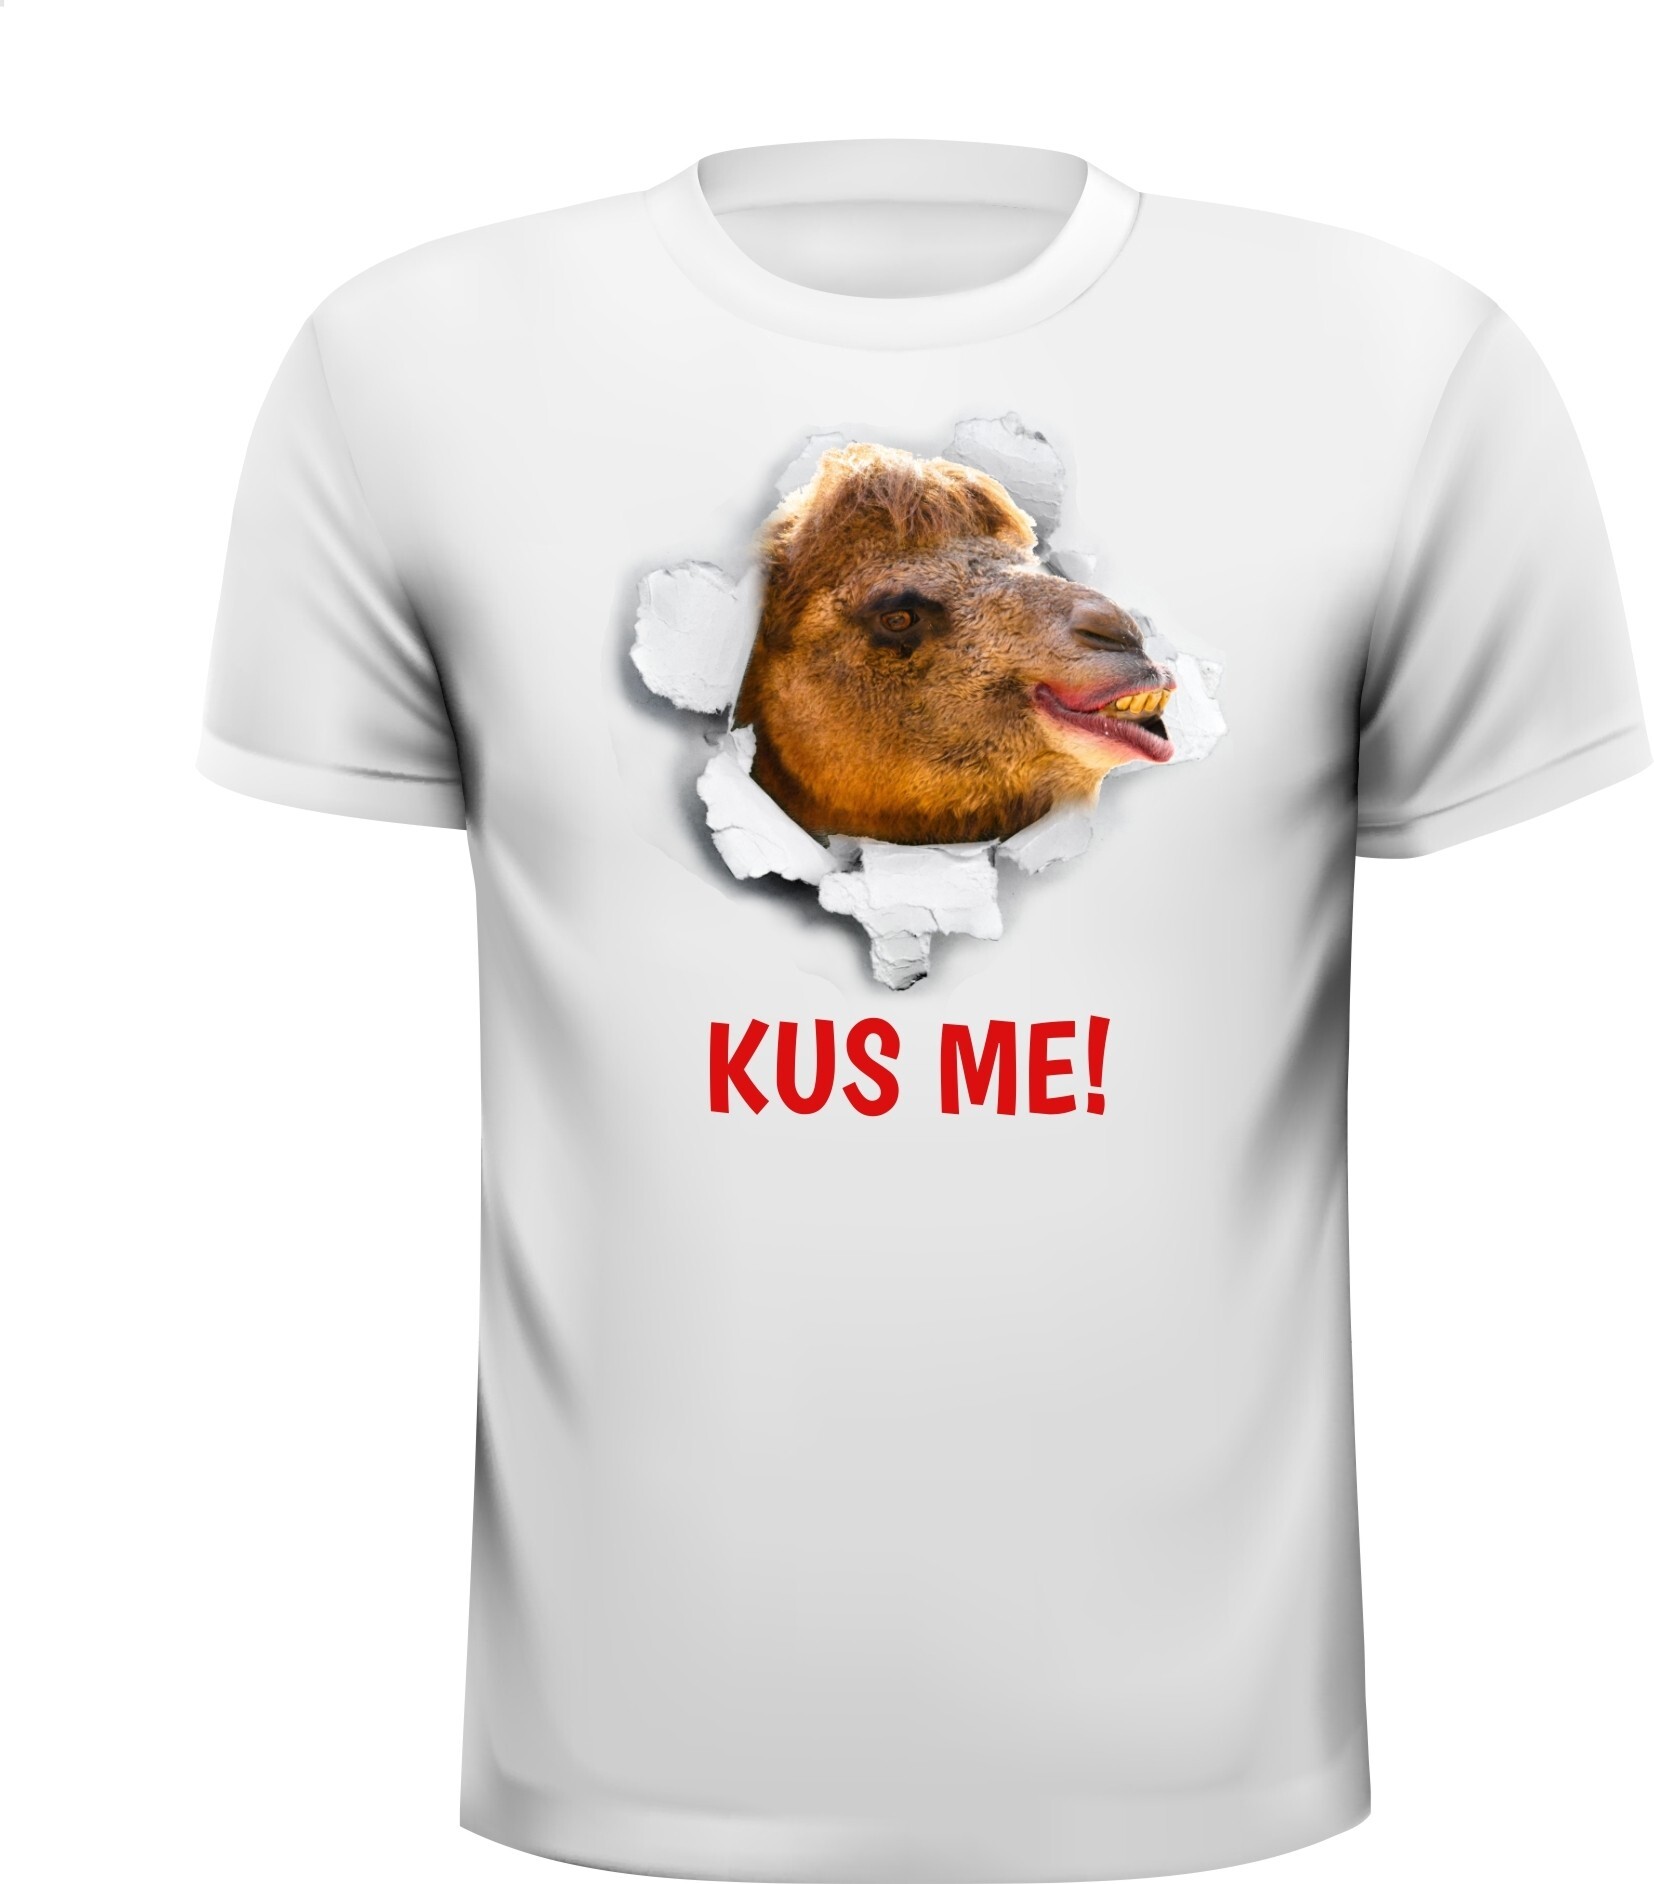 T-shirt kameel dromedaris kus me vrijgezellenfeest